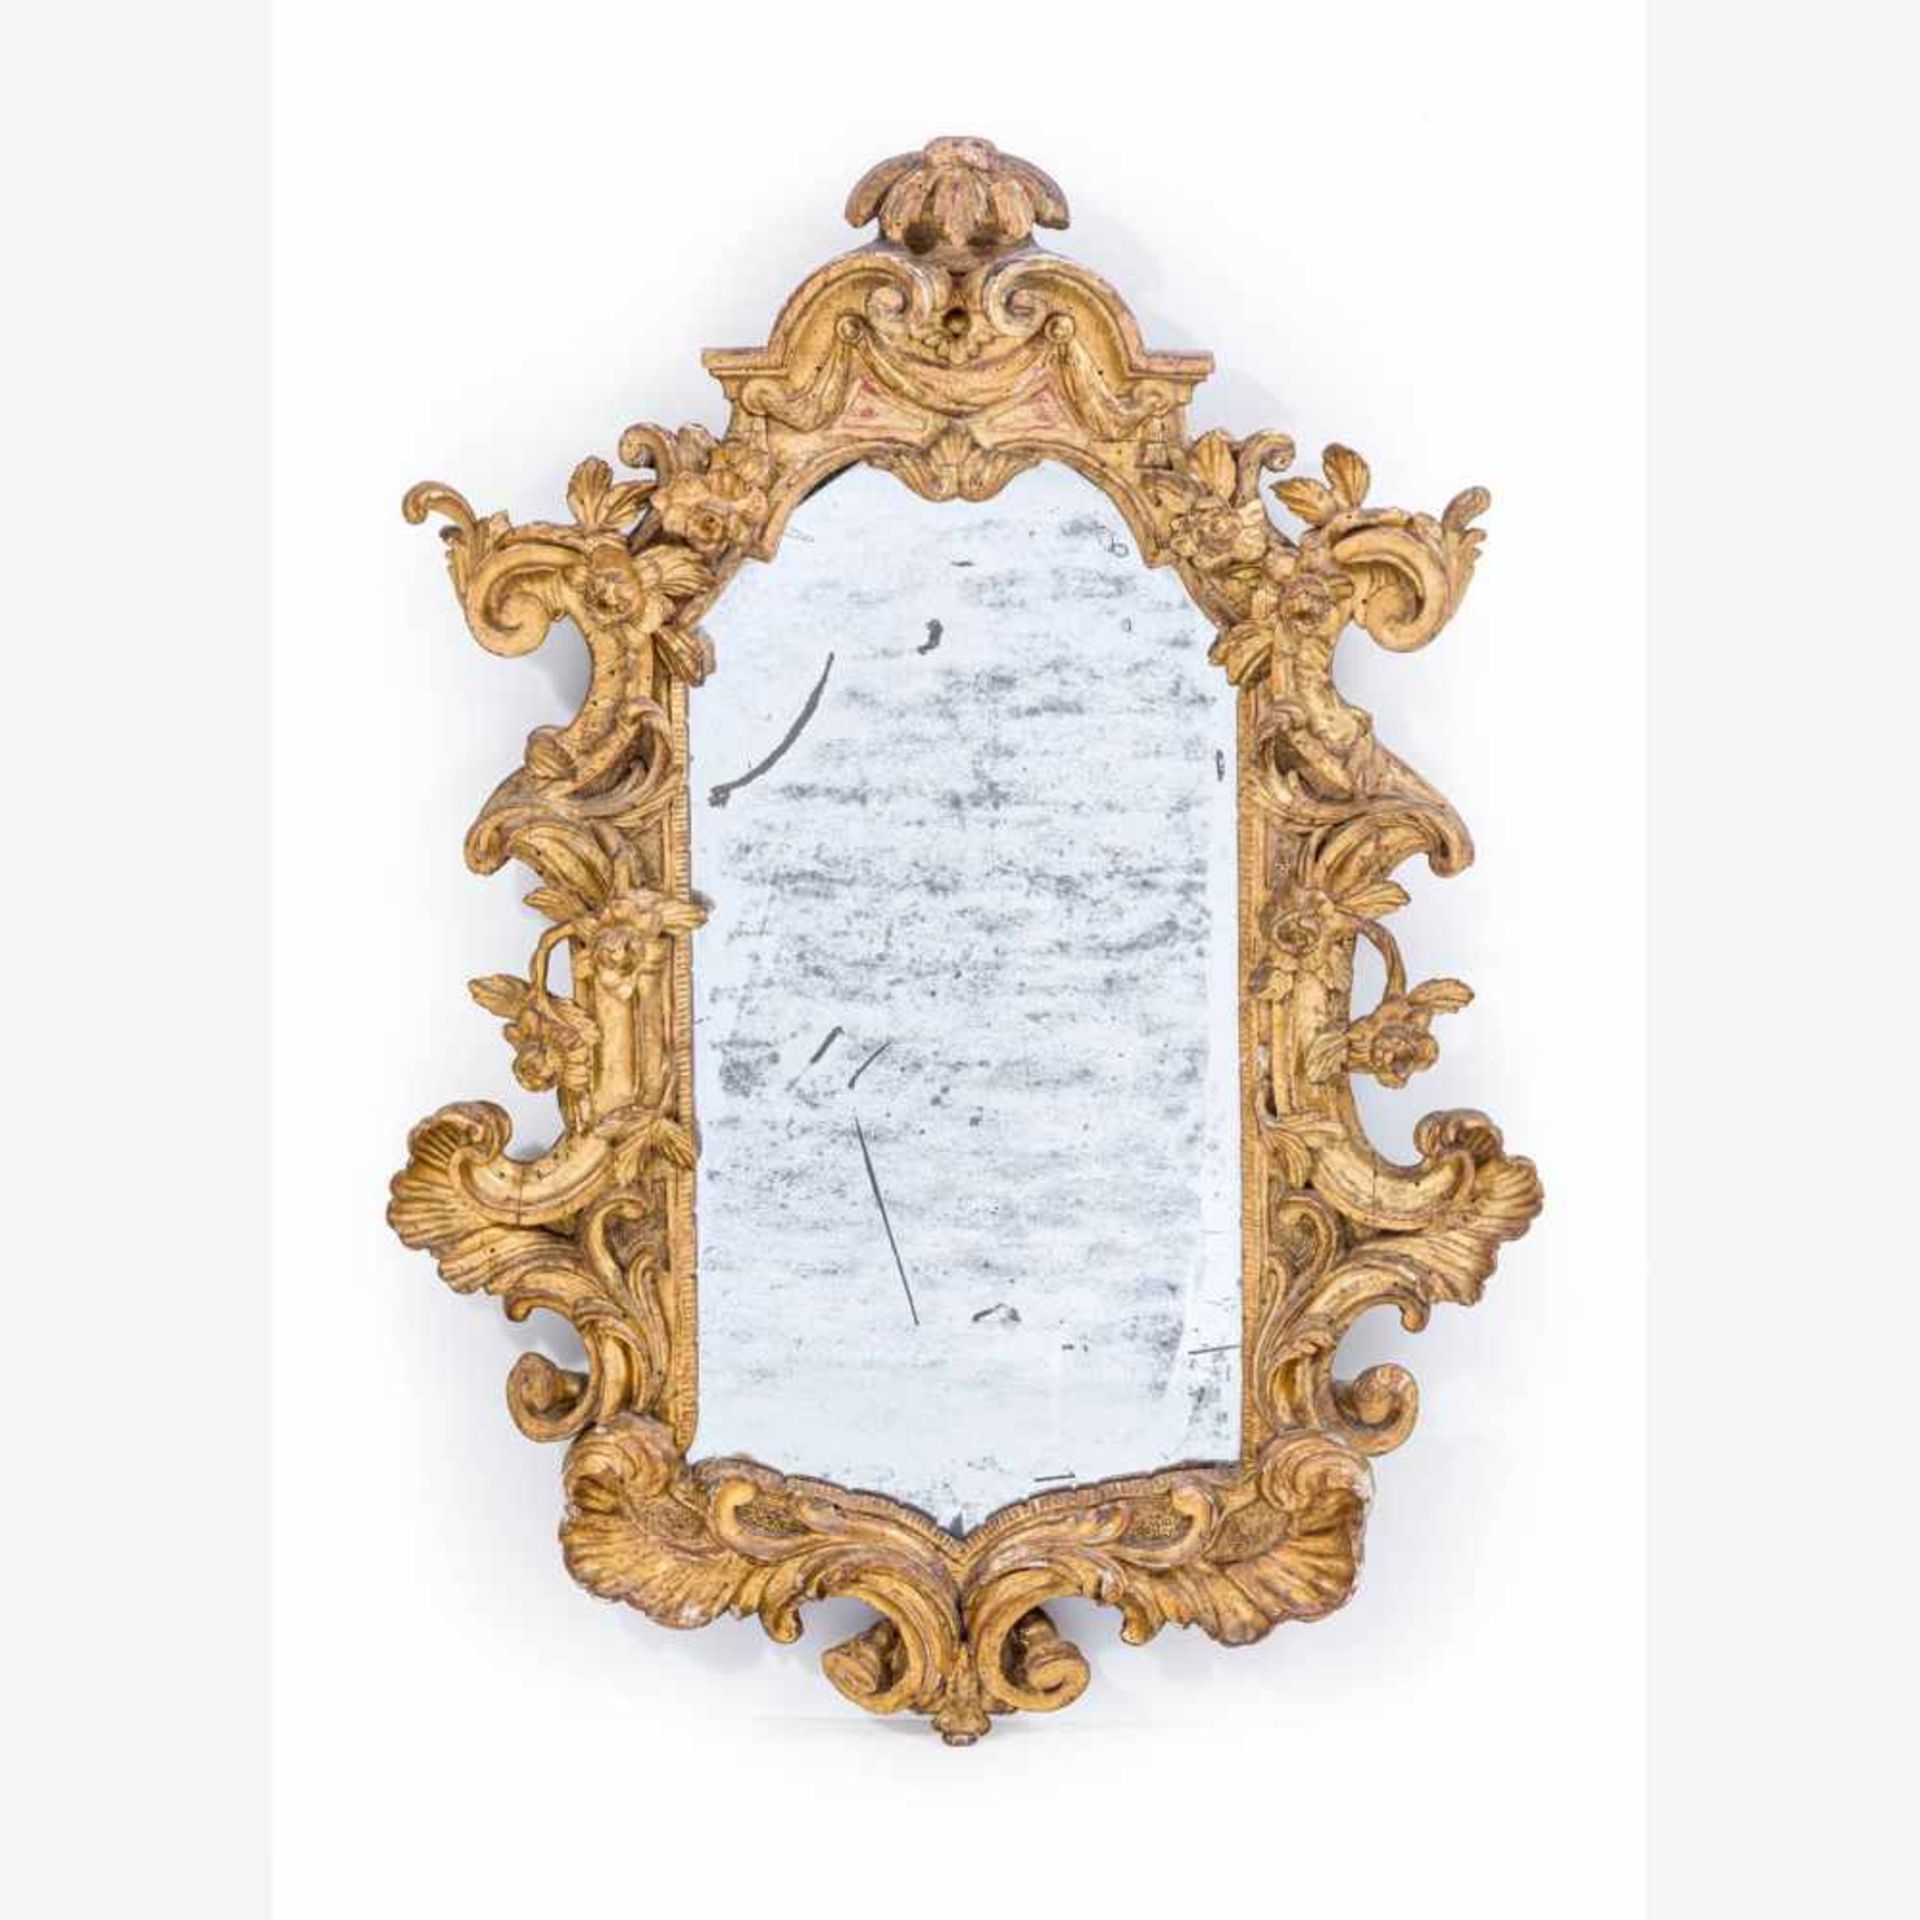 Barocker RahmenspiegelItalien, 18. Jh.Holz, geschnitzt u. vergoldet. Plastische Blüten auf gekämmten